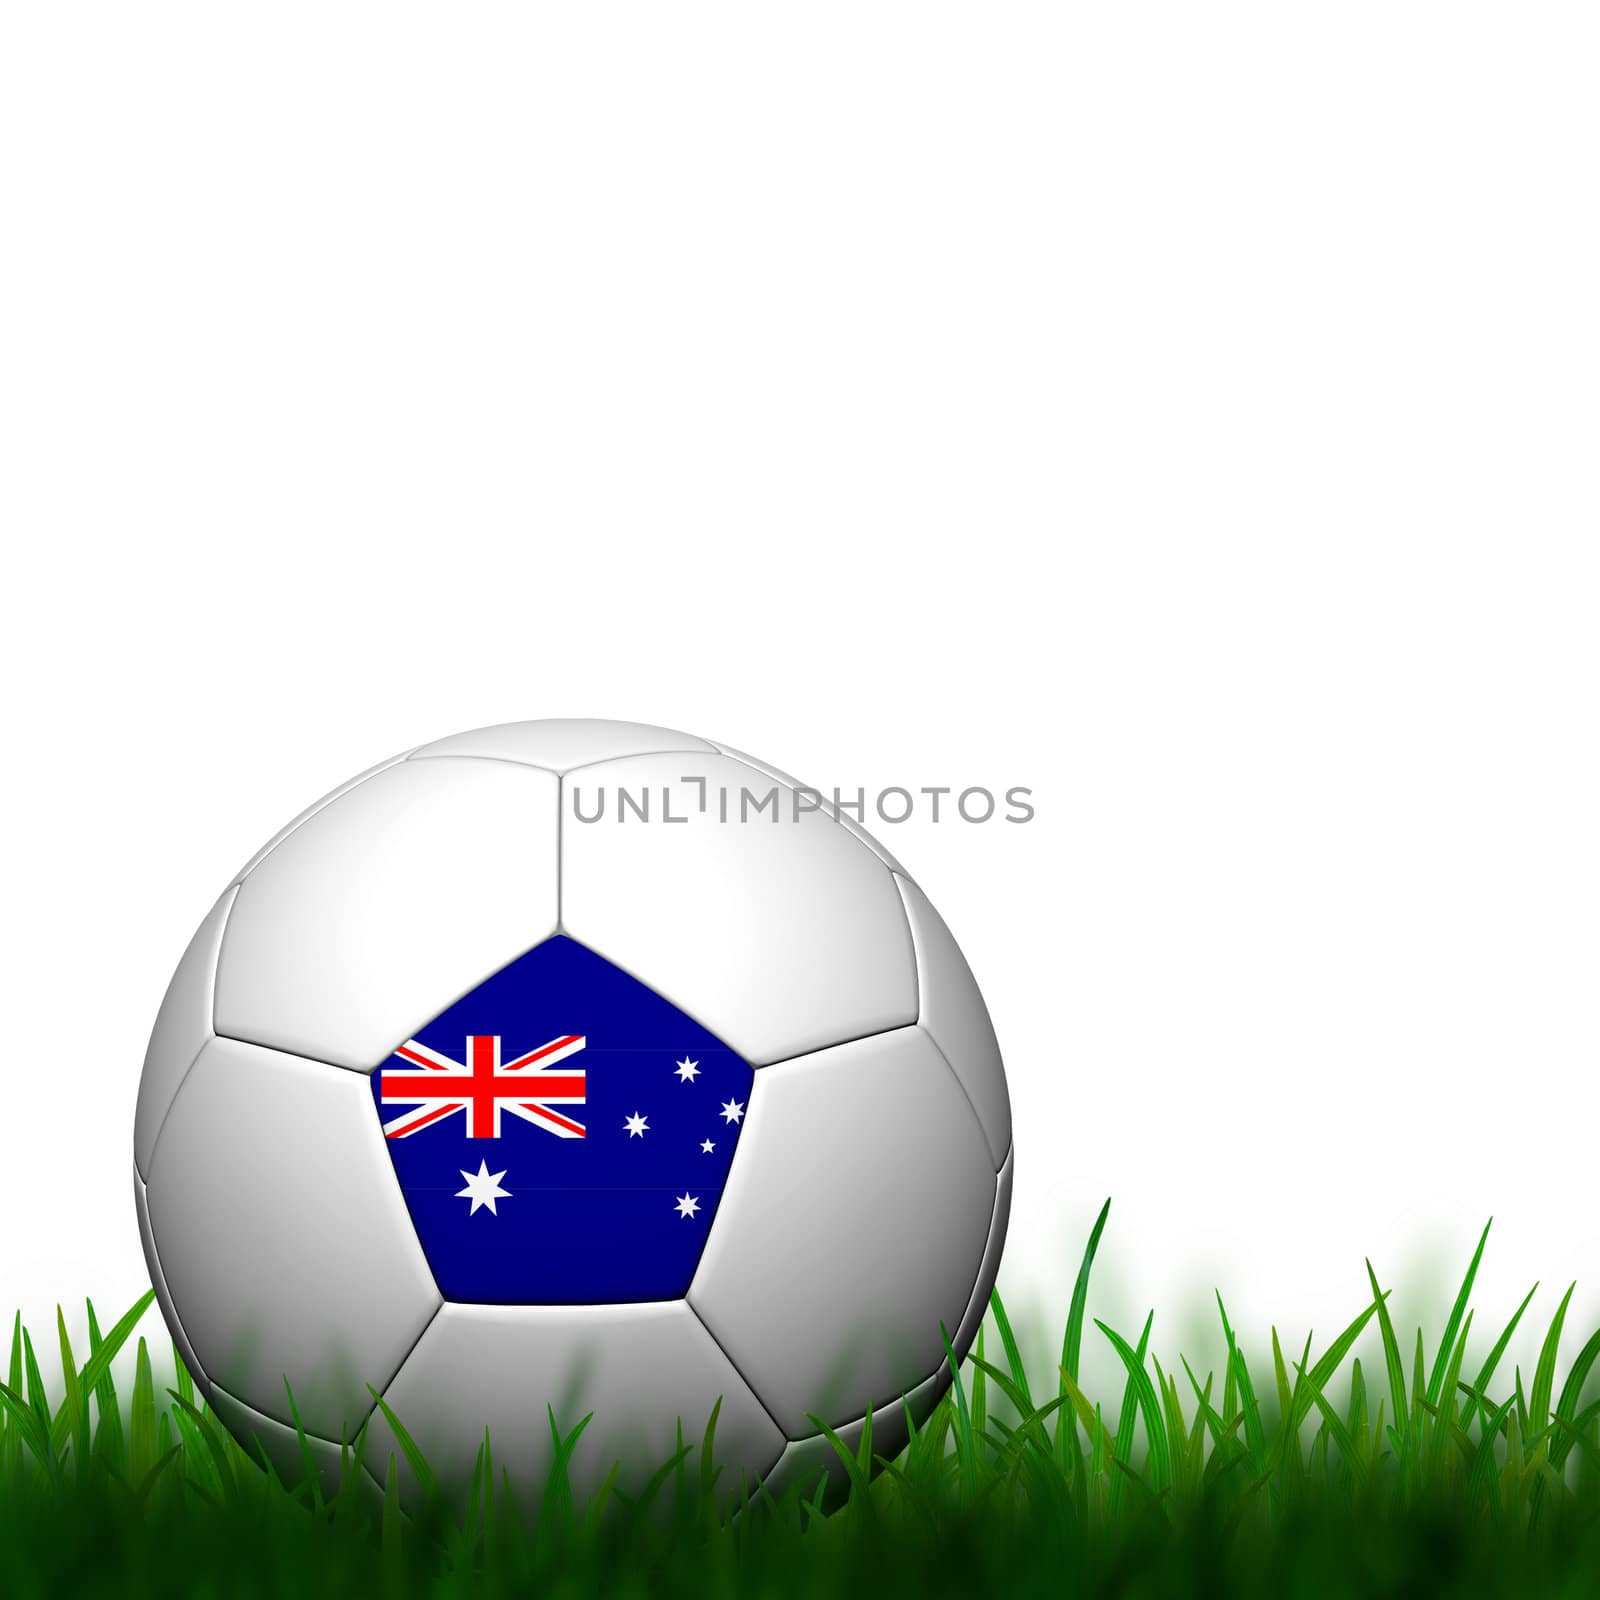 3D Football Australia Flag Patter in green grass on white backgr by jakgree